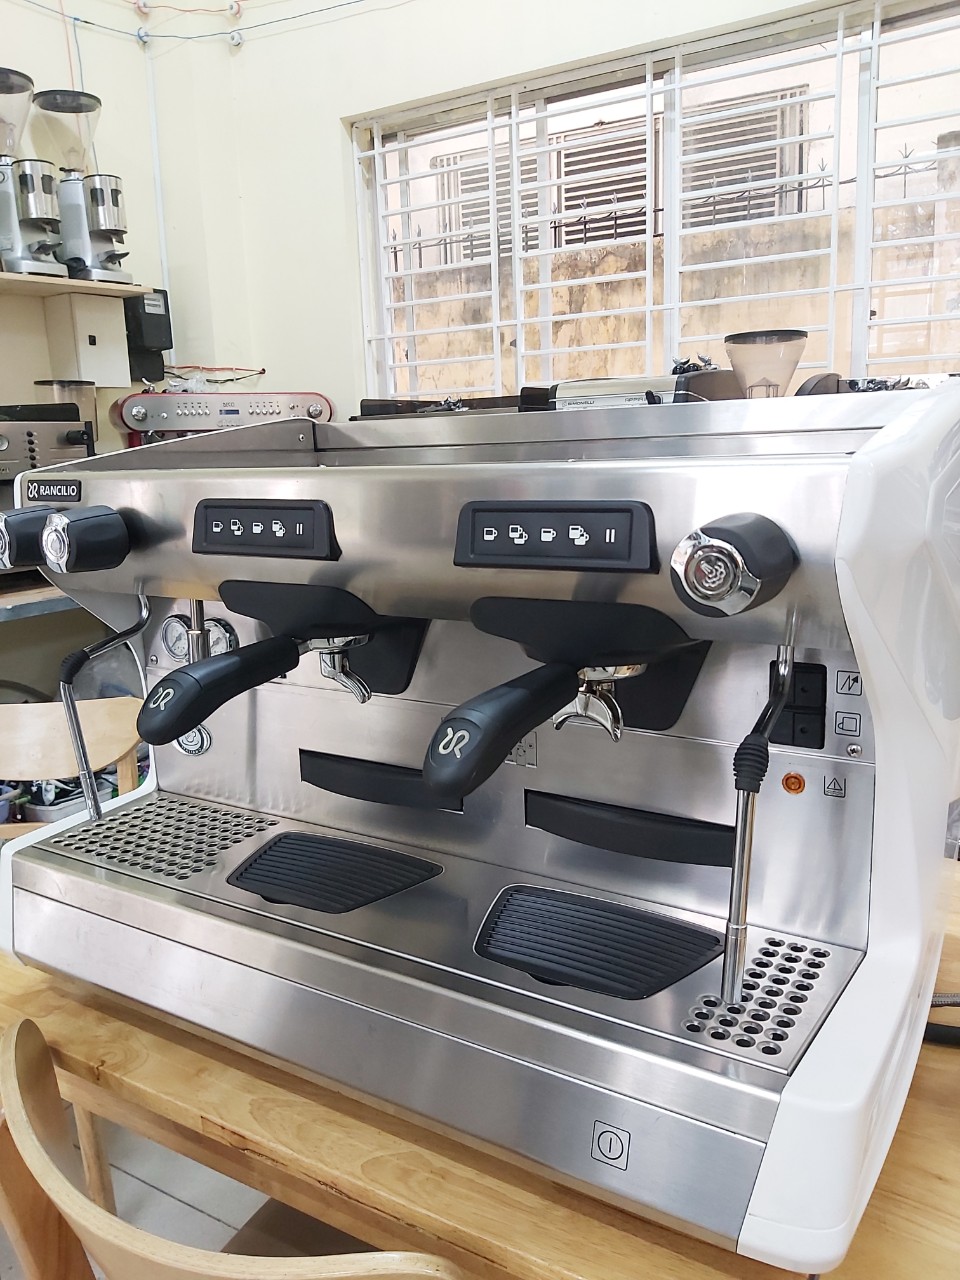 Bán máy pha cafe đã qua sử dụng Rancilico Classe 5 chuyên nghiệp 2 group.